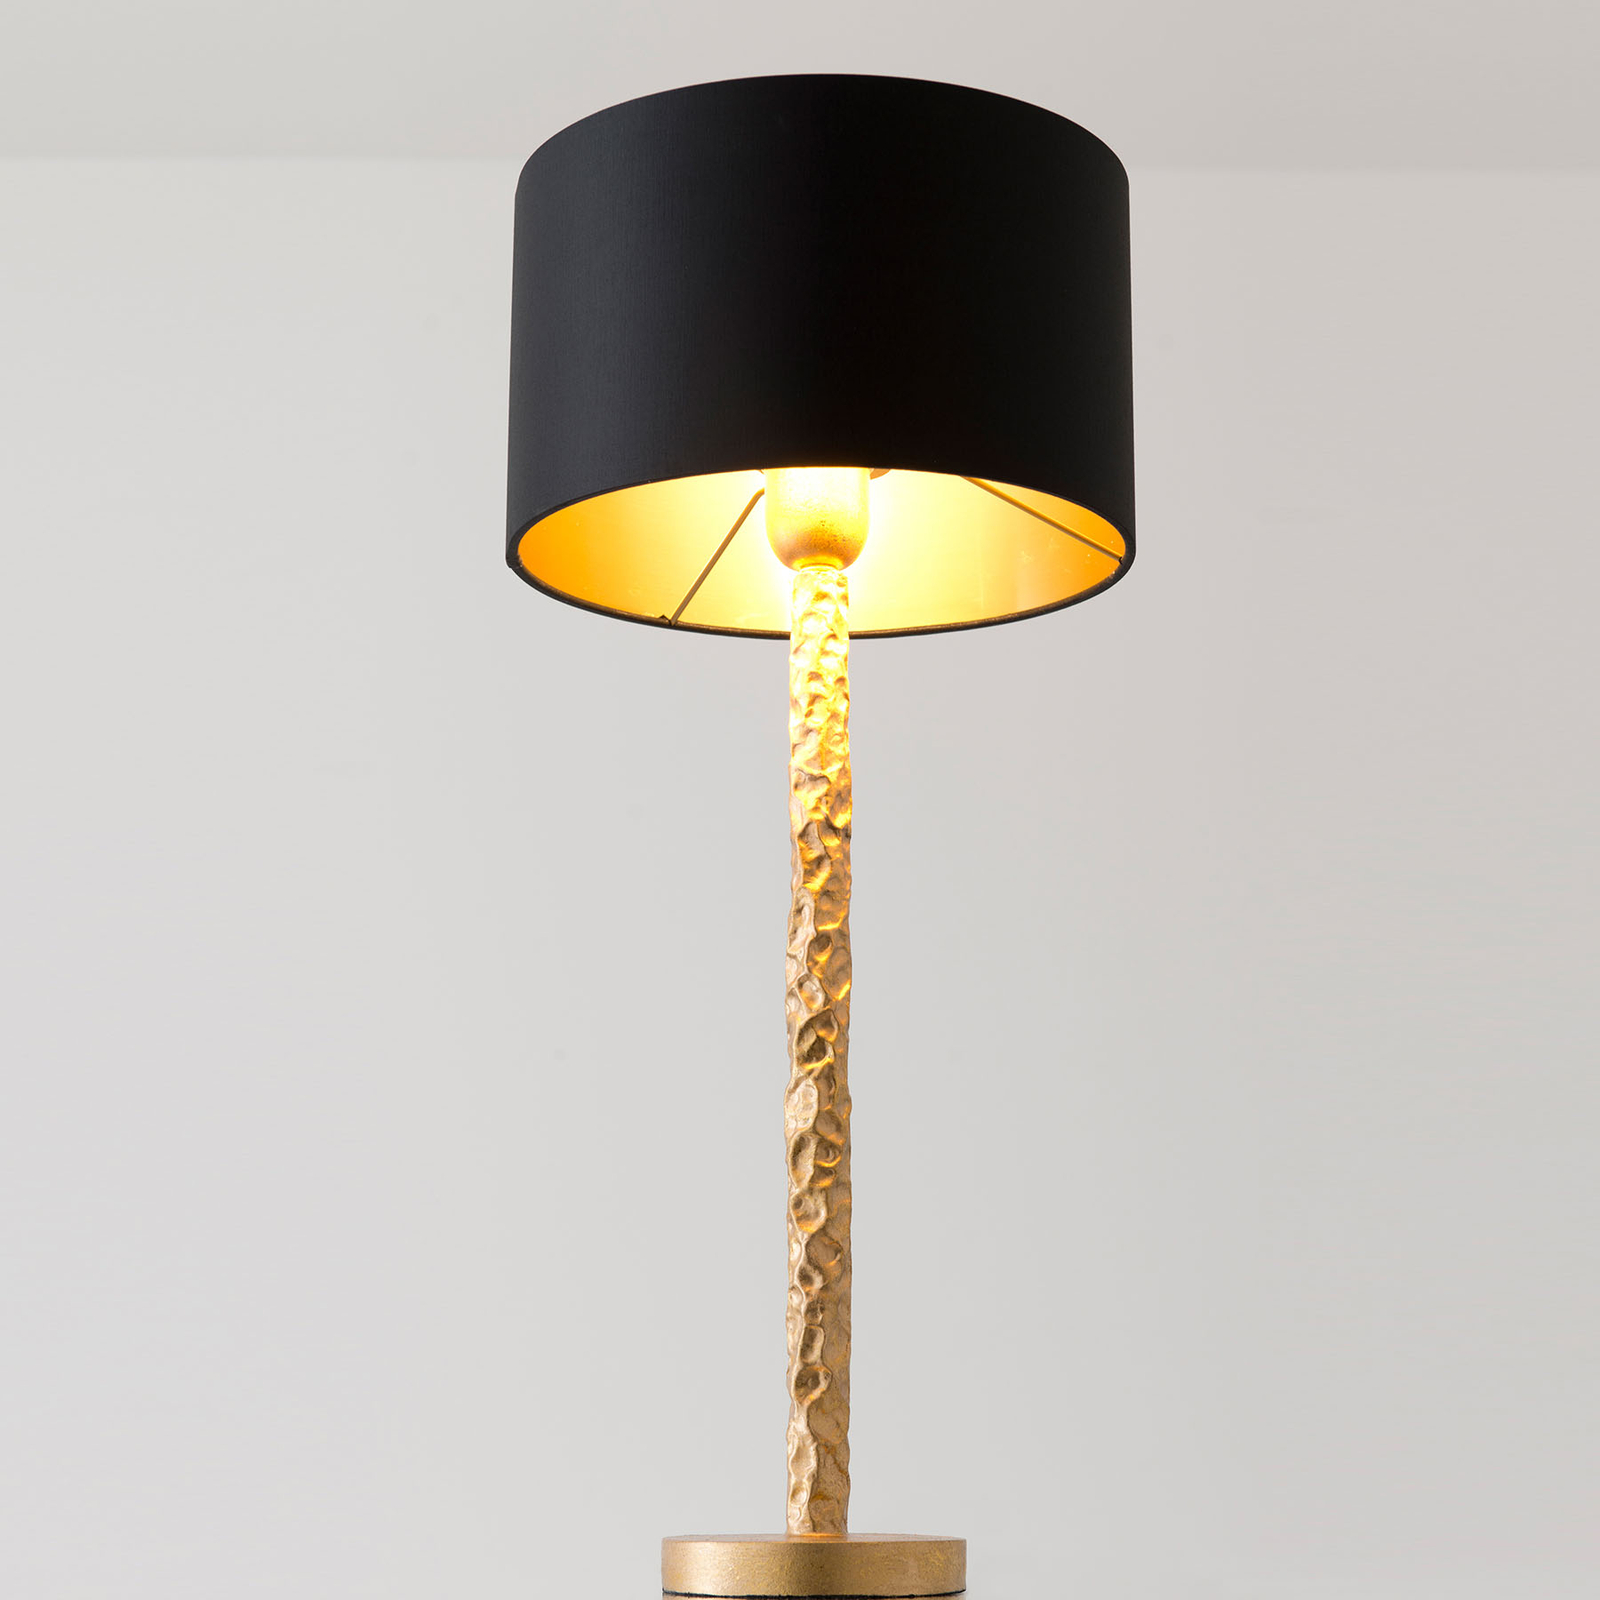 Bordlampe Cancelliere Rotonda sort/guld 57 cm